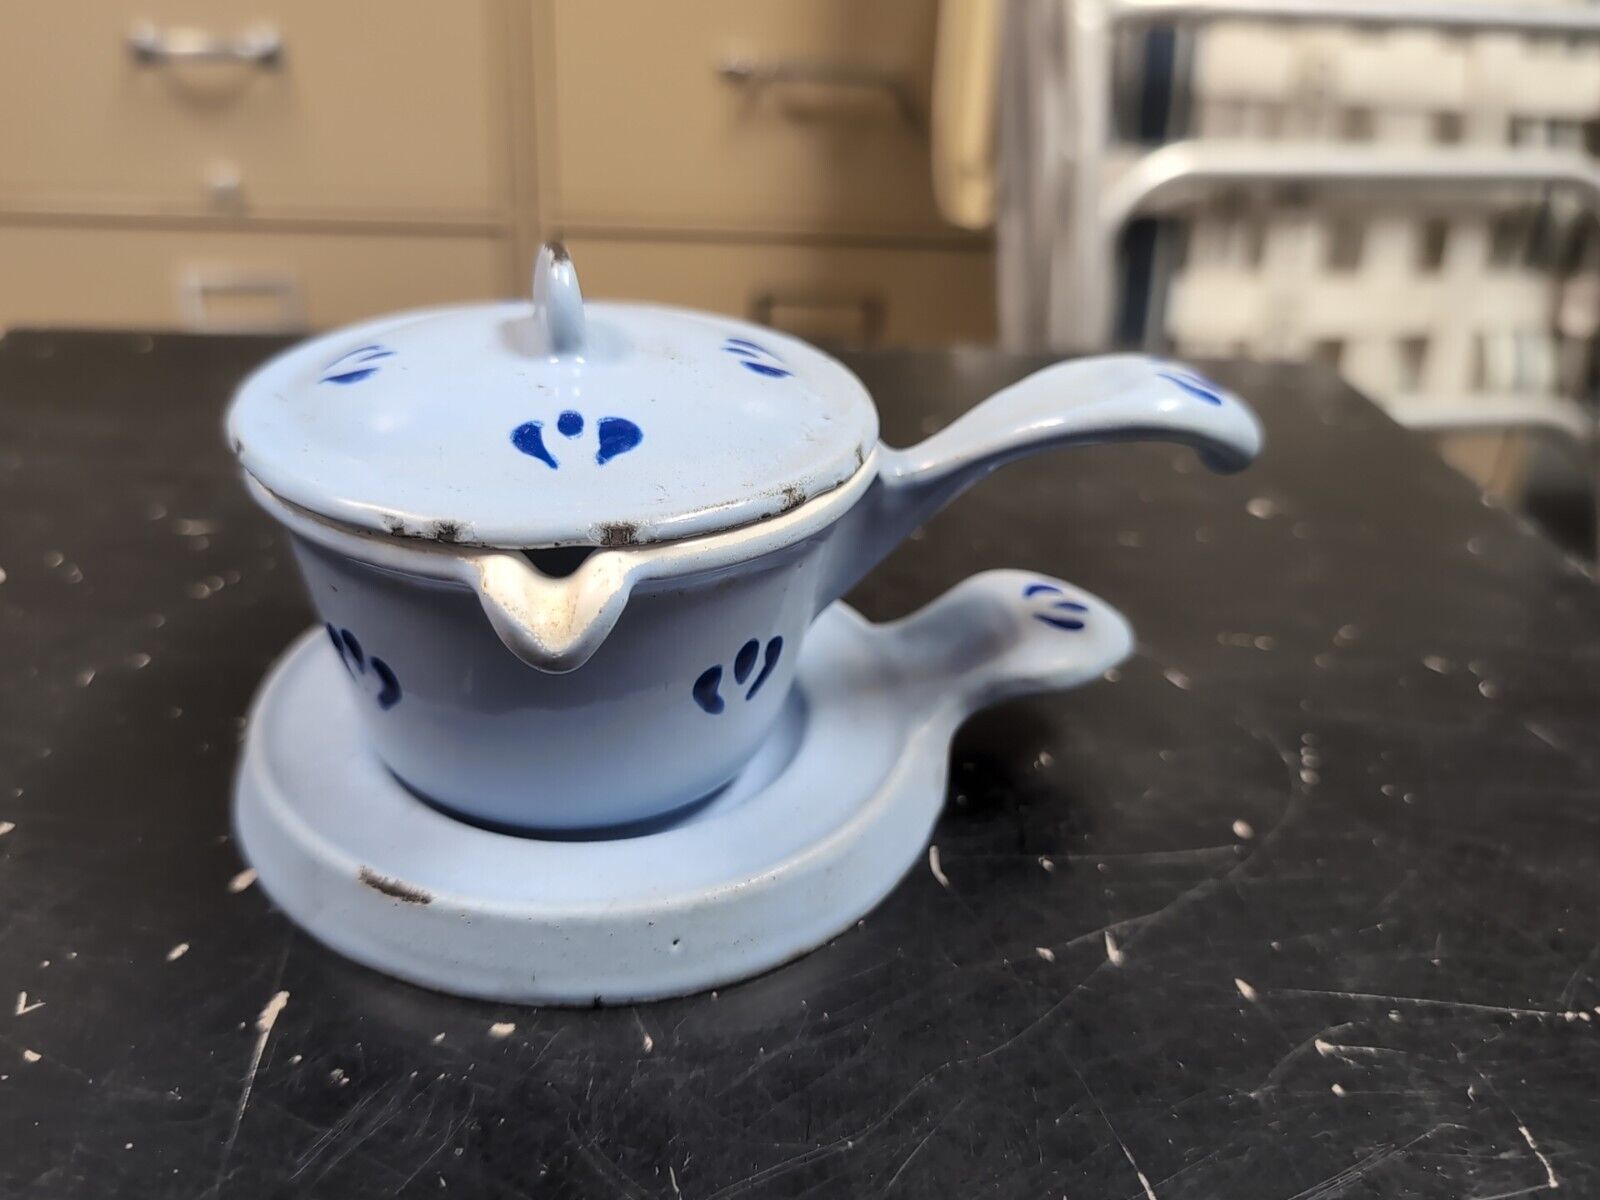 Vintage Belgian Descoware Blue Flower Butter Warmer Pot with Lid and Trivet